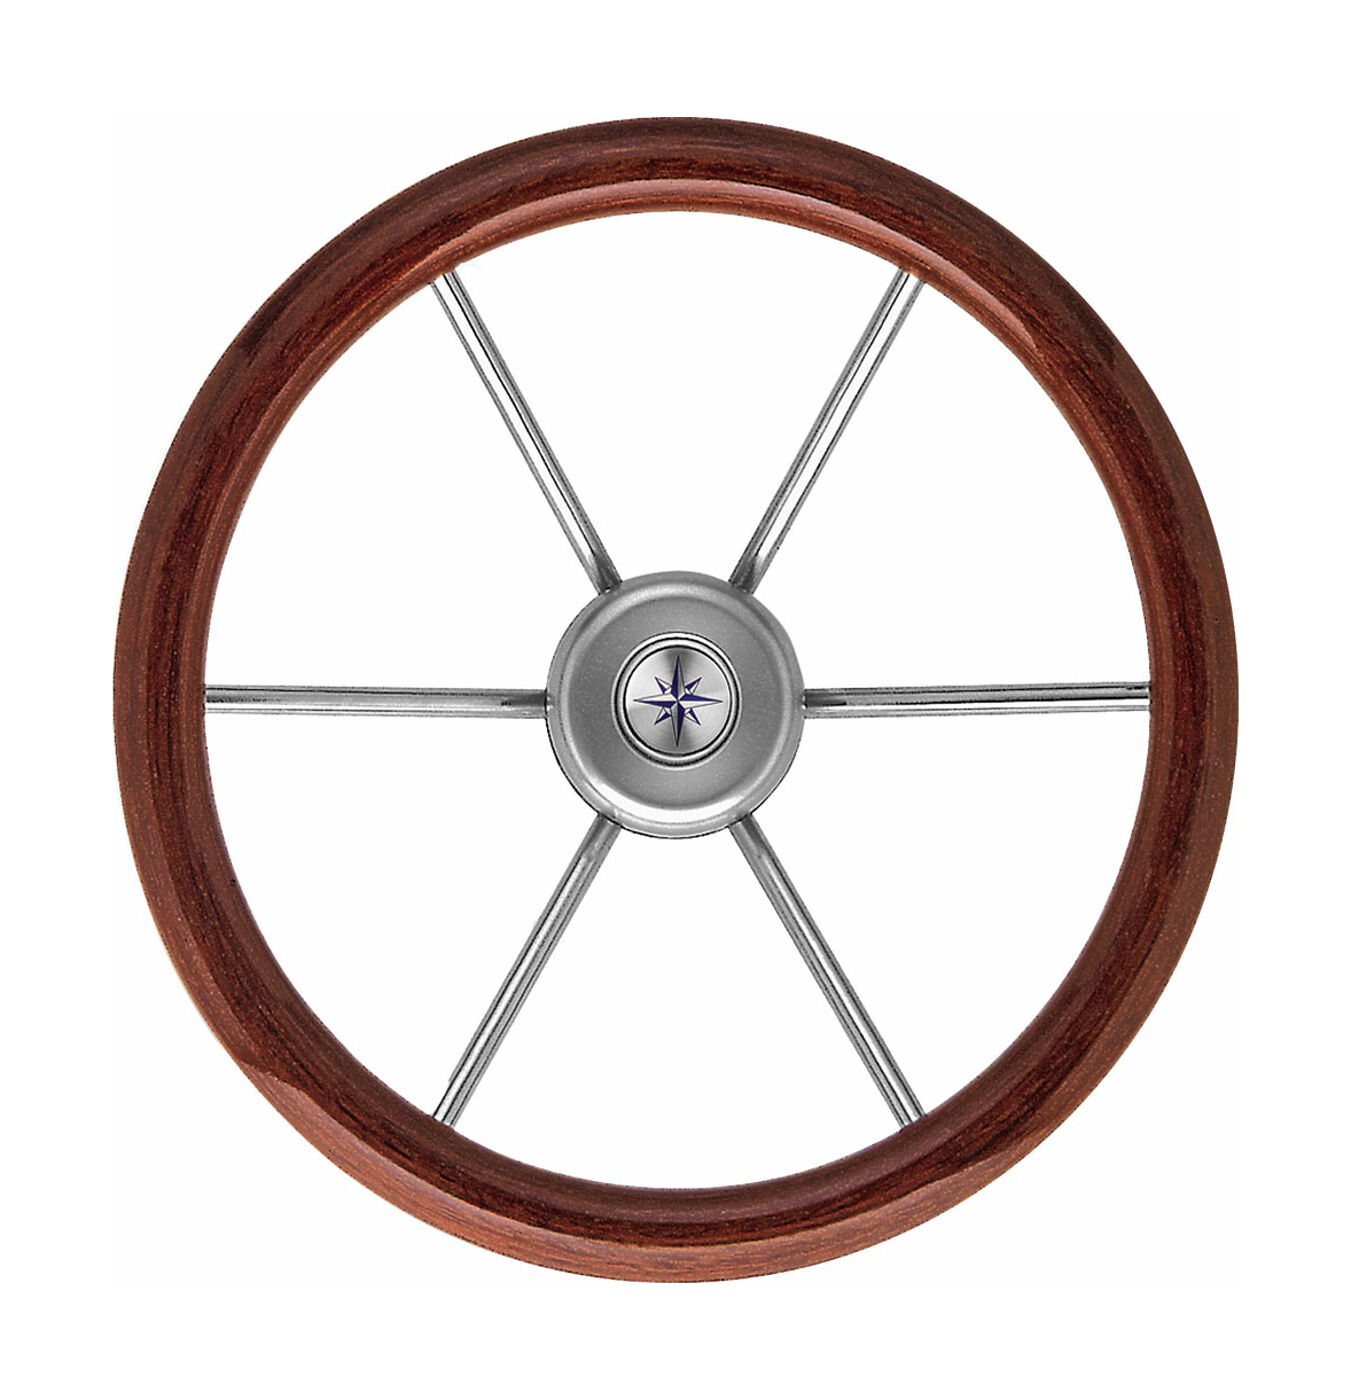 Рулевое колесо LEADER WOOD деревянный обод серебряные спицы д. 340 мм